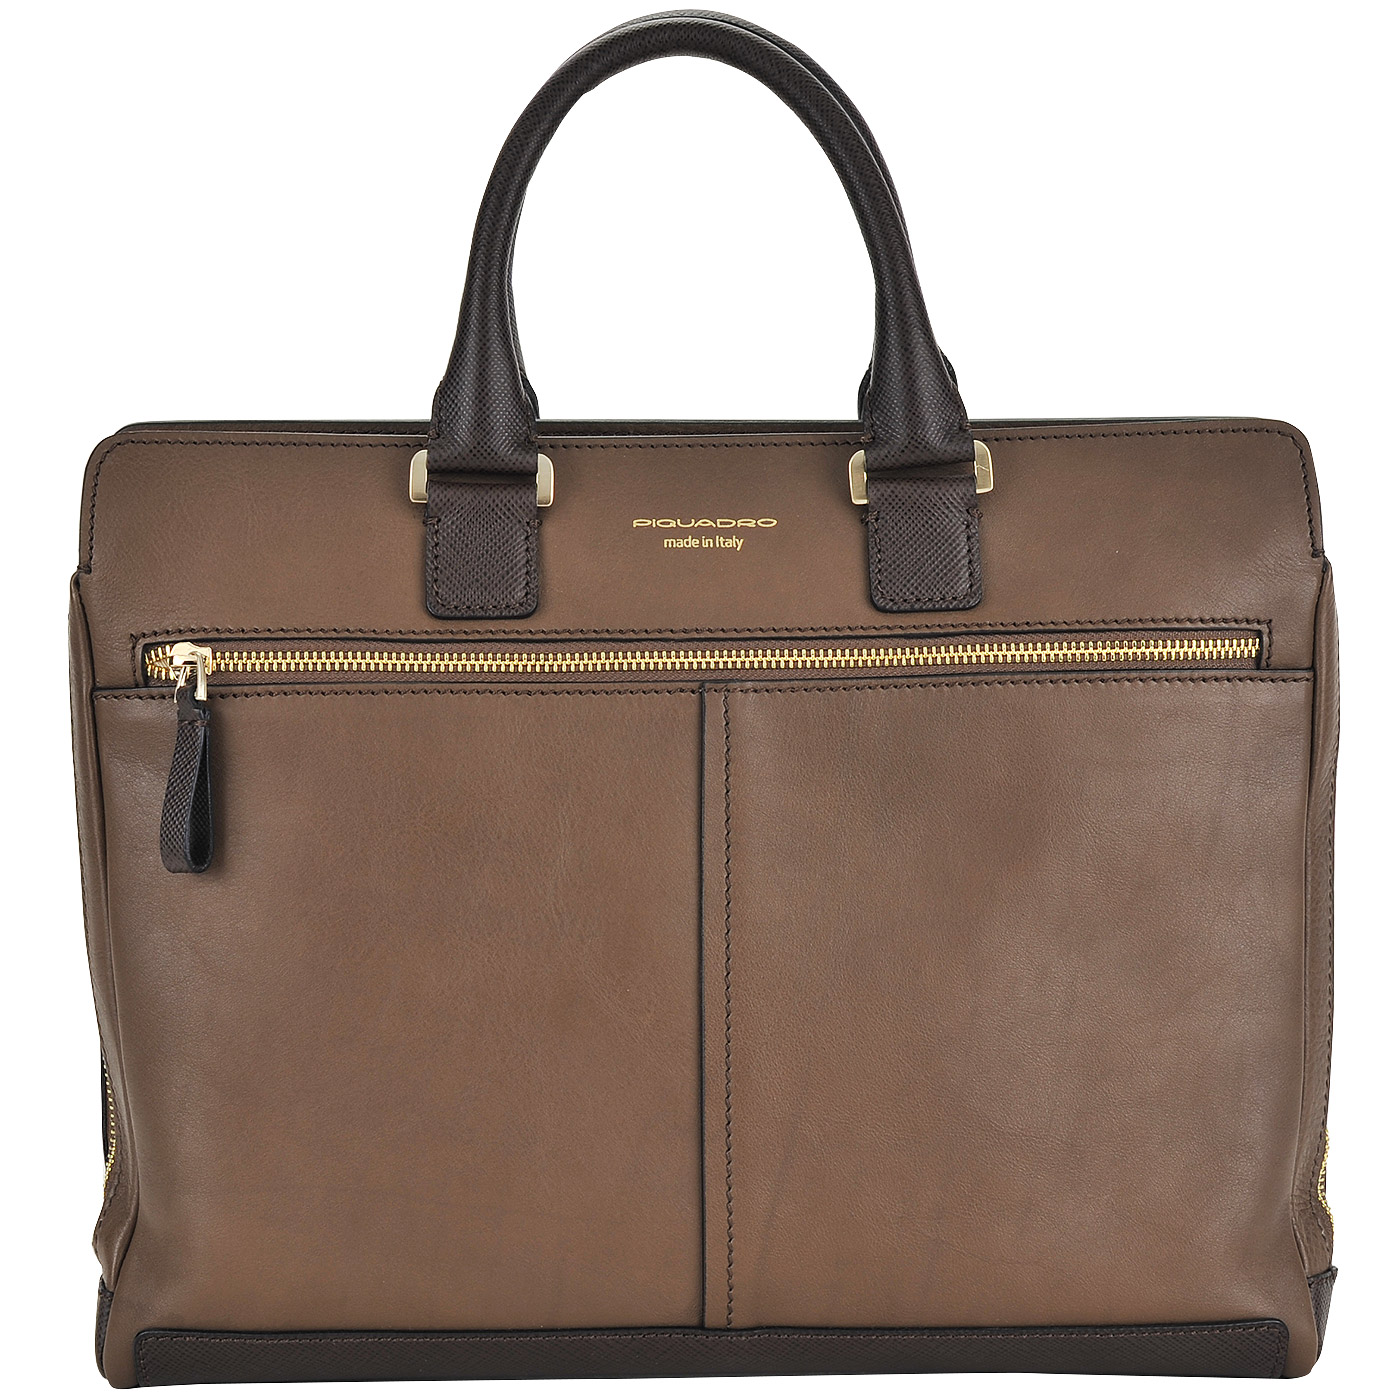 Кожаная деловая сумка коричневого цвета с короткими ручками Piquadro